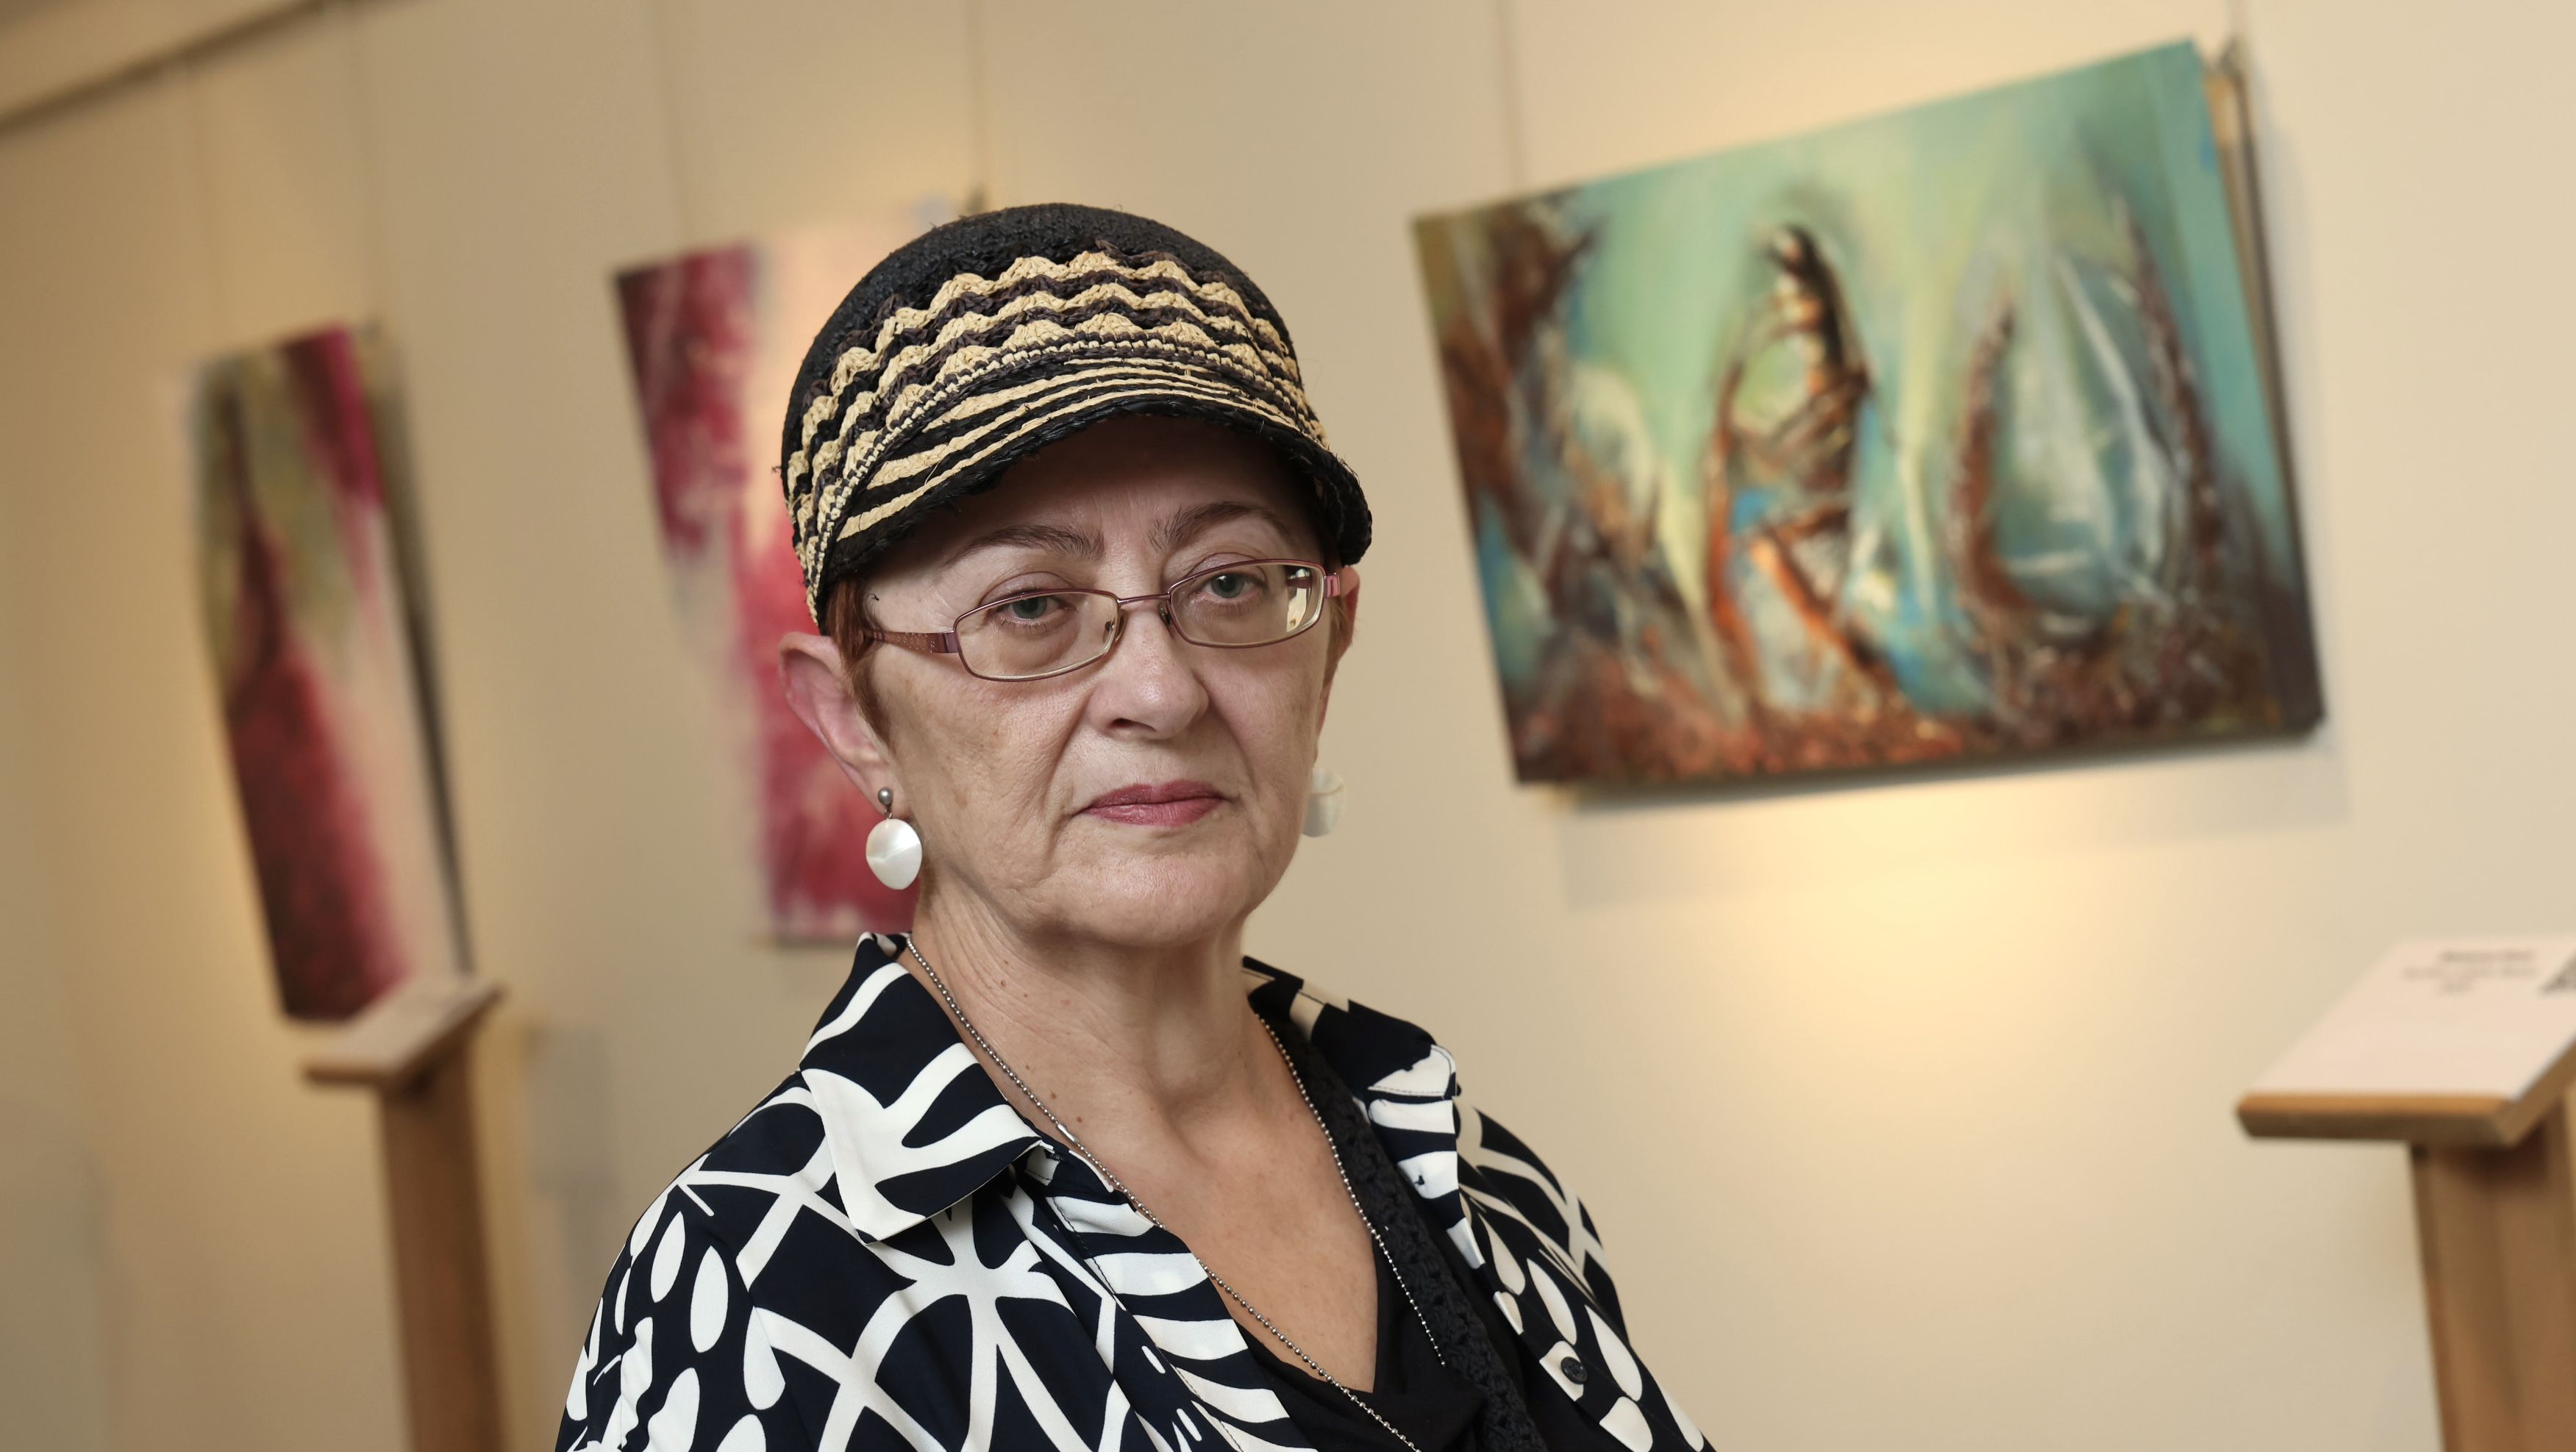 La artista con discapacidad visual Ángeles Lozano: "Gracias a la pintura tengo una razón para vivir"